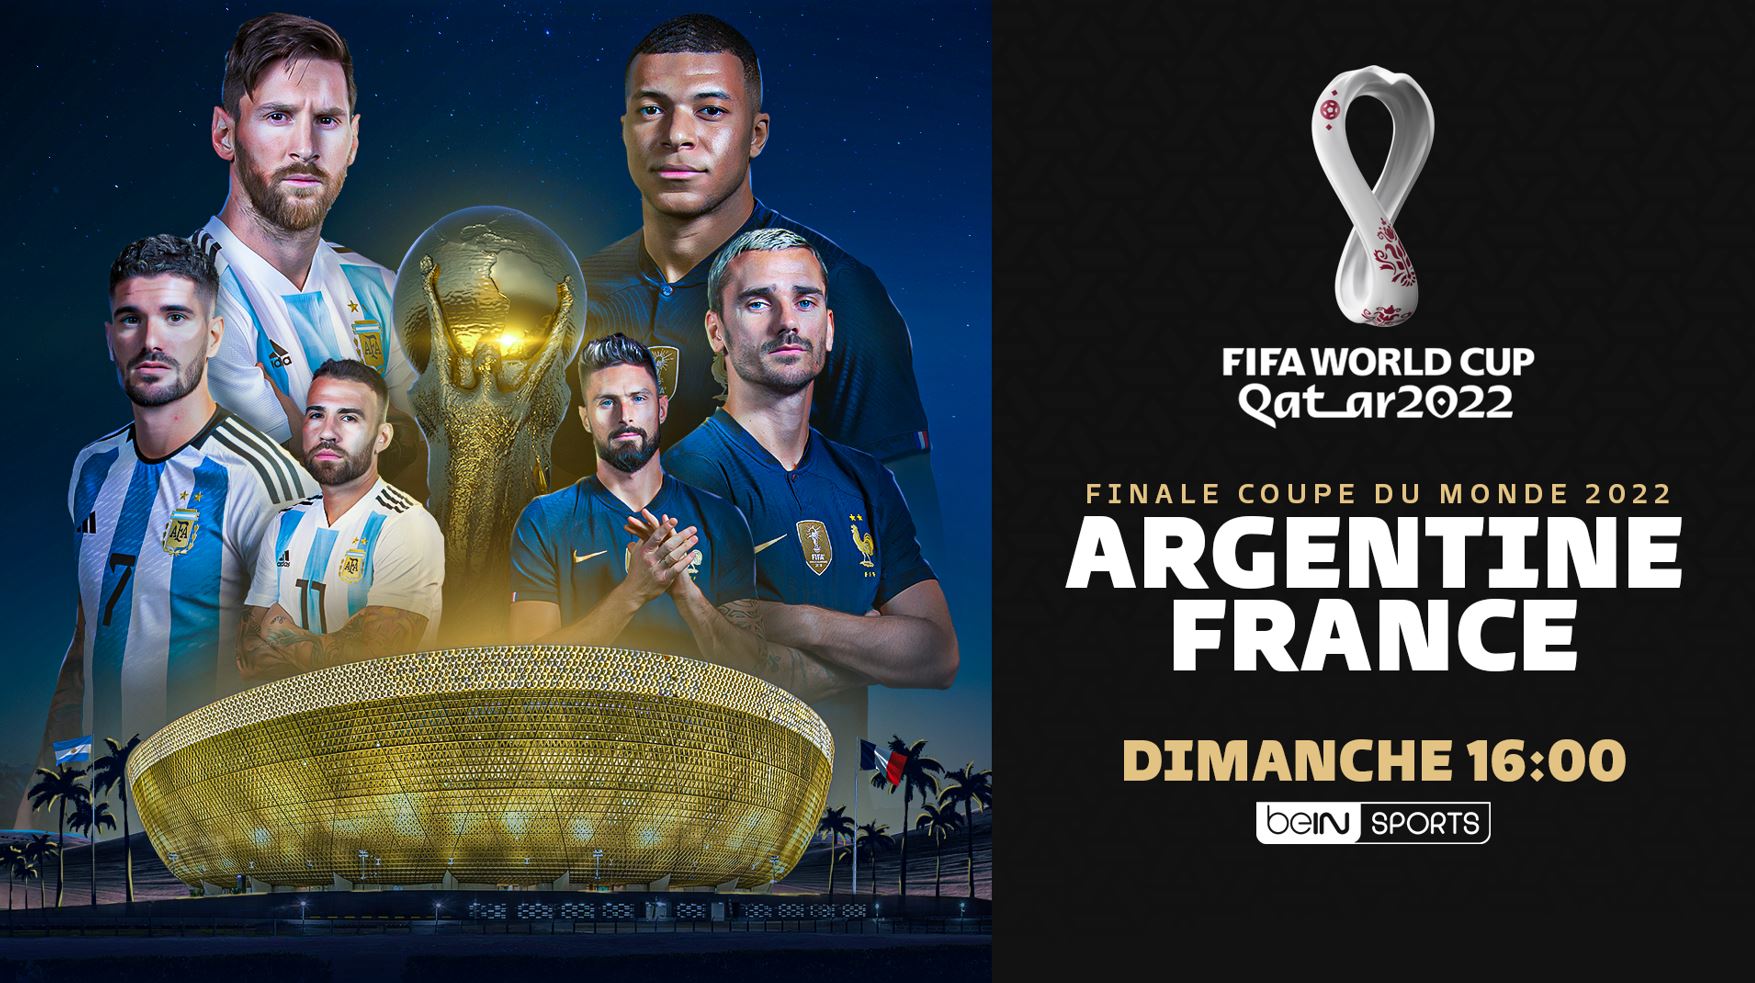 France / Argentine Finale de la Coupe du Monde 2022 Journée